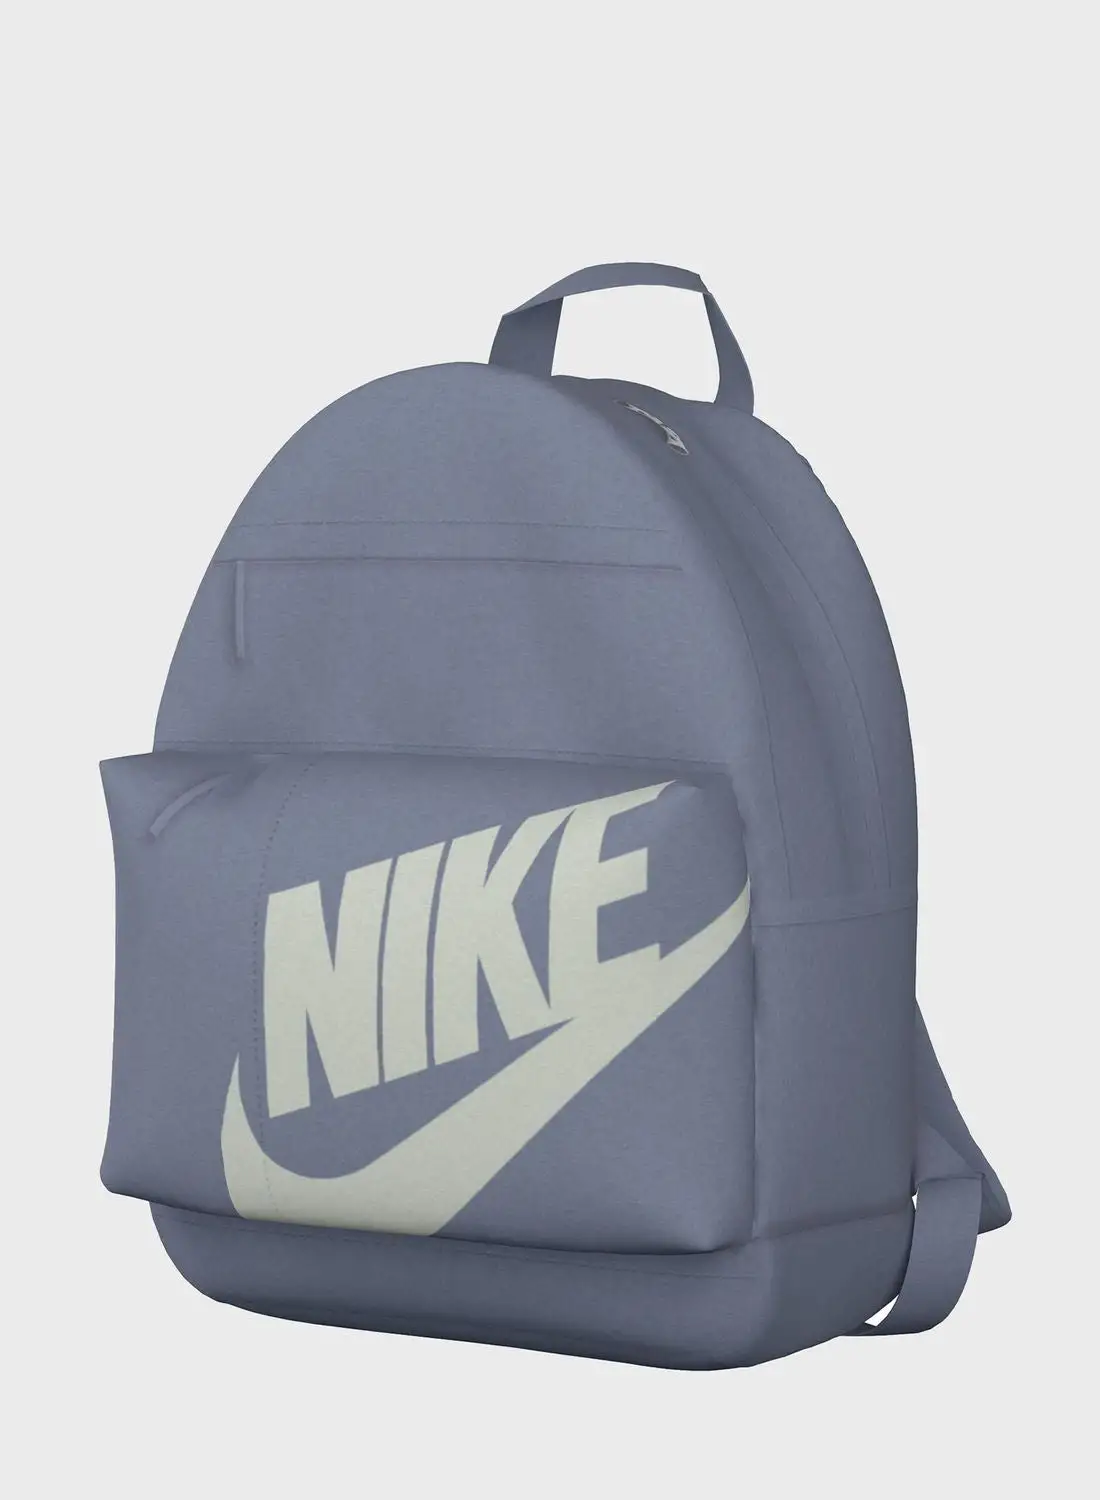 Nike Elemental Hybrid Backpack